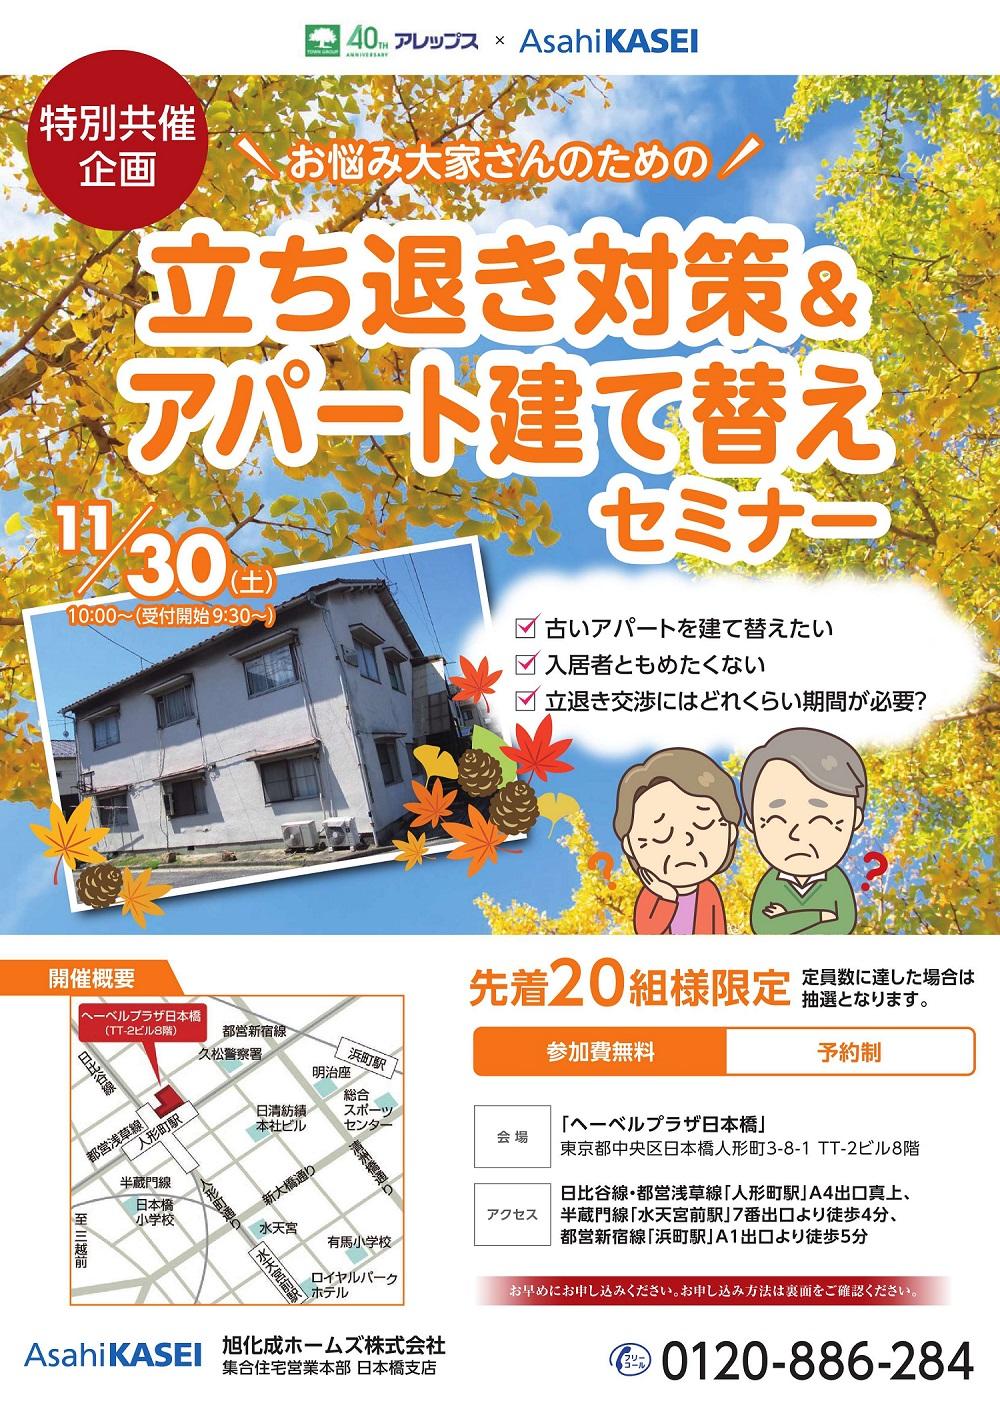 https://www.asahi-kasei.co.jp/maison/hebelplaza/blog/18/nihonbashi/item/2019/191118-2_1.jpg